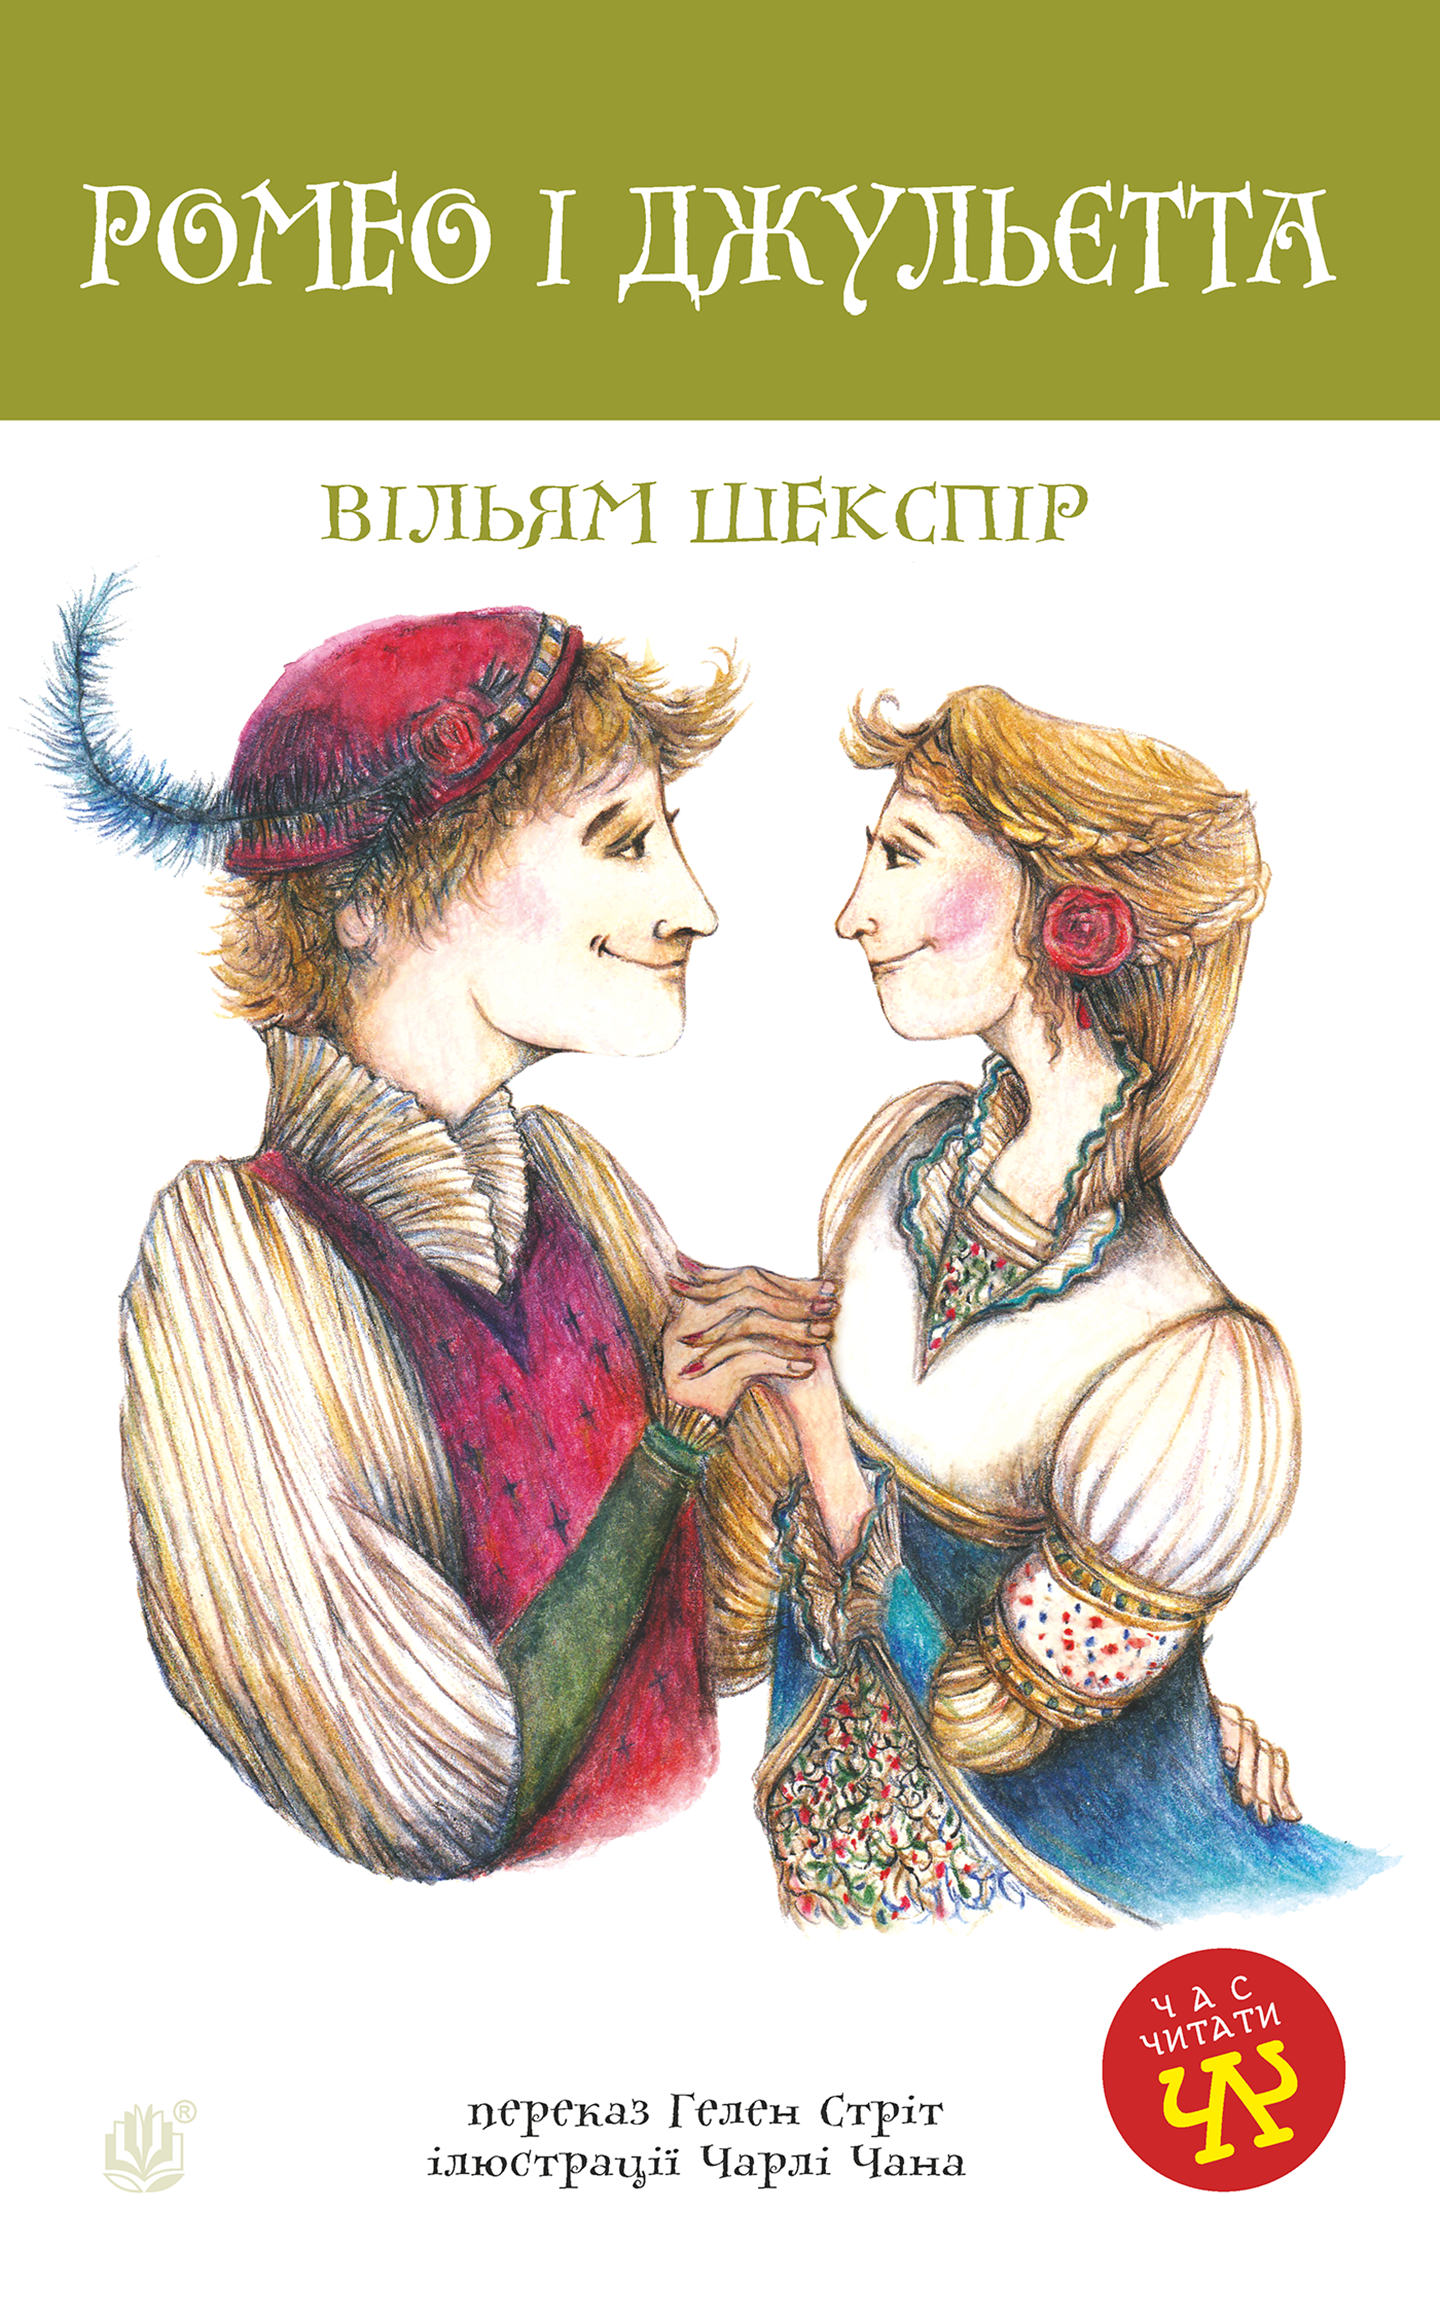 Ромео і Джульєтта. Автор — Уильям Шекспир. 